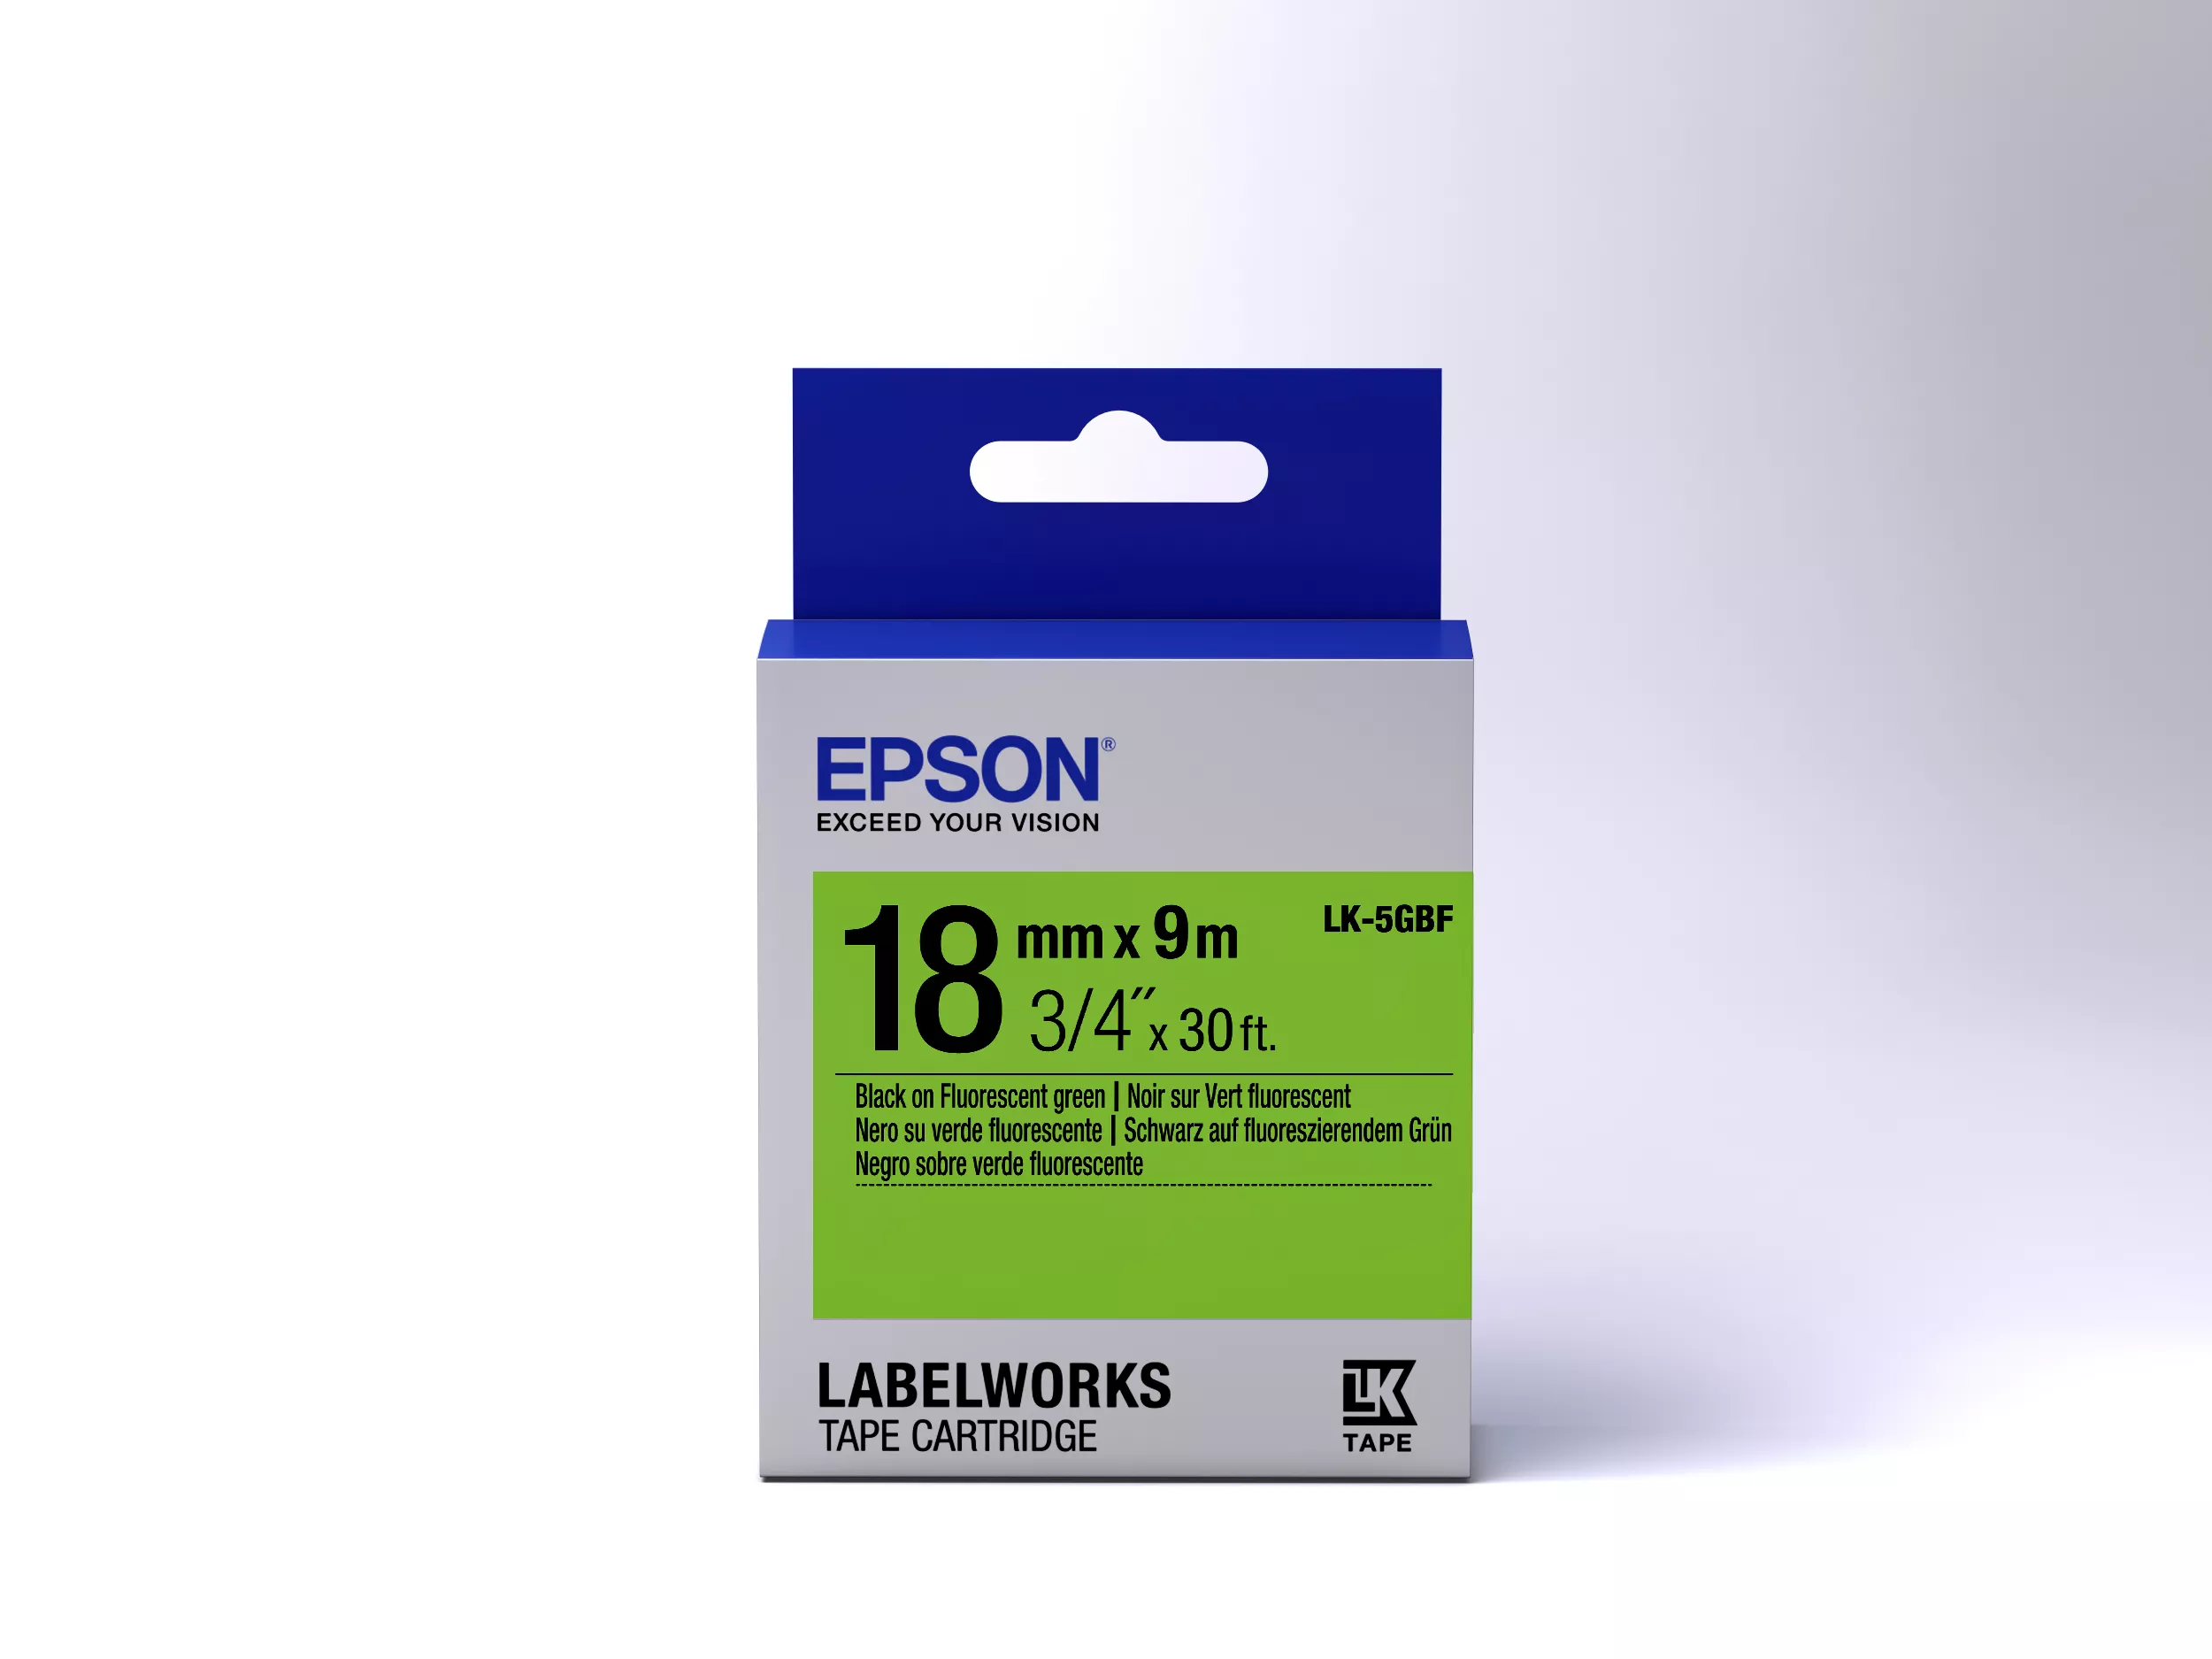 Vente Epson LK-5GBF - Fluorescent - Noir sur Vert Epson au meilleur prix - visuel 2